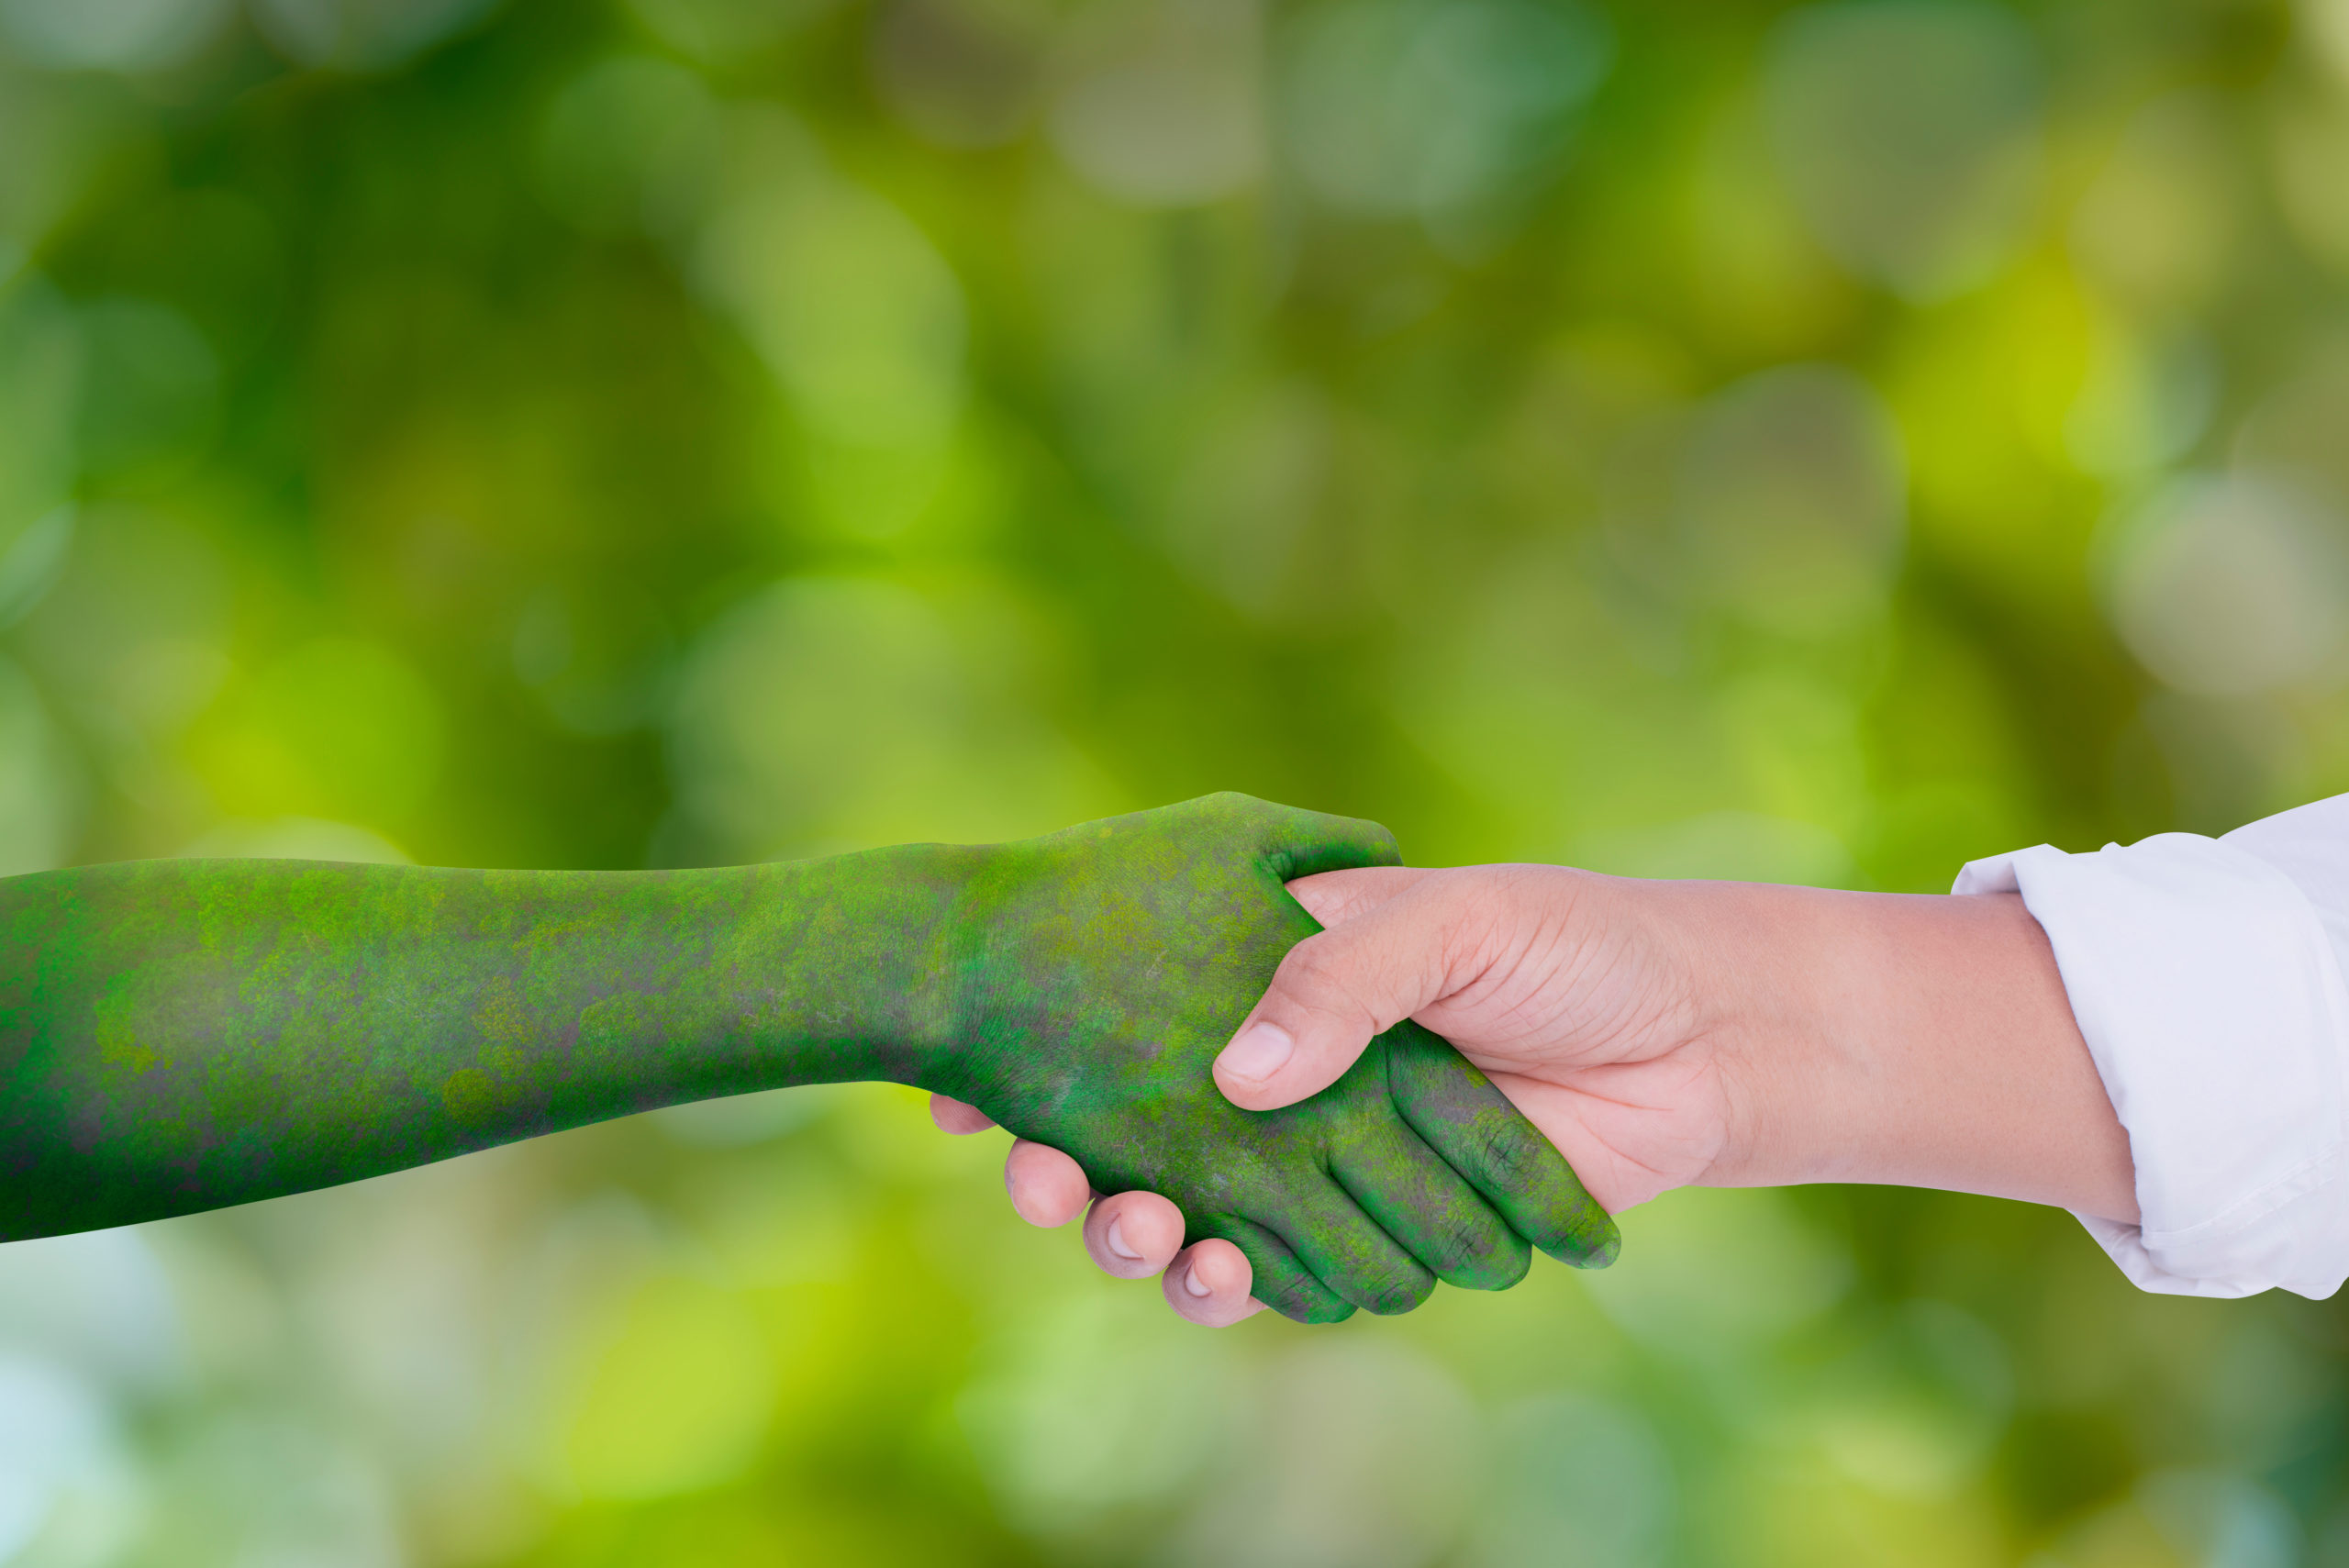 Zwei Personen geben sich die Hand. Die eine Hand ist grün gefärbt und steht sinnbildlich für die Umwelt. Der Hintergrund ist ebenfalls grün.